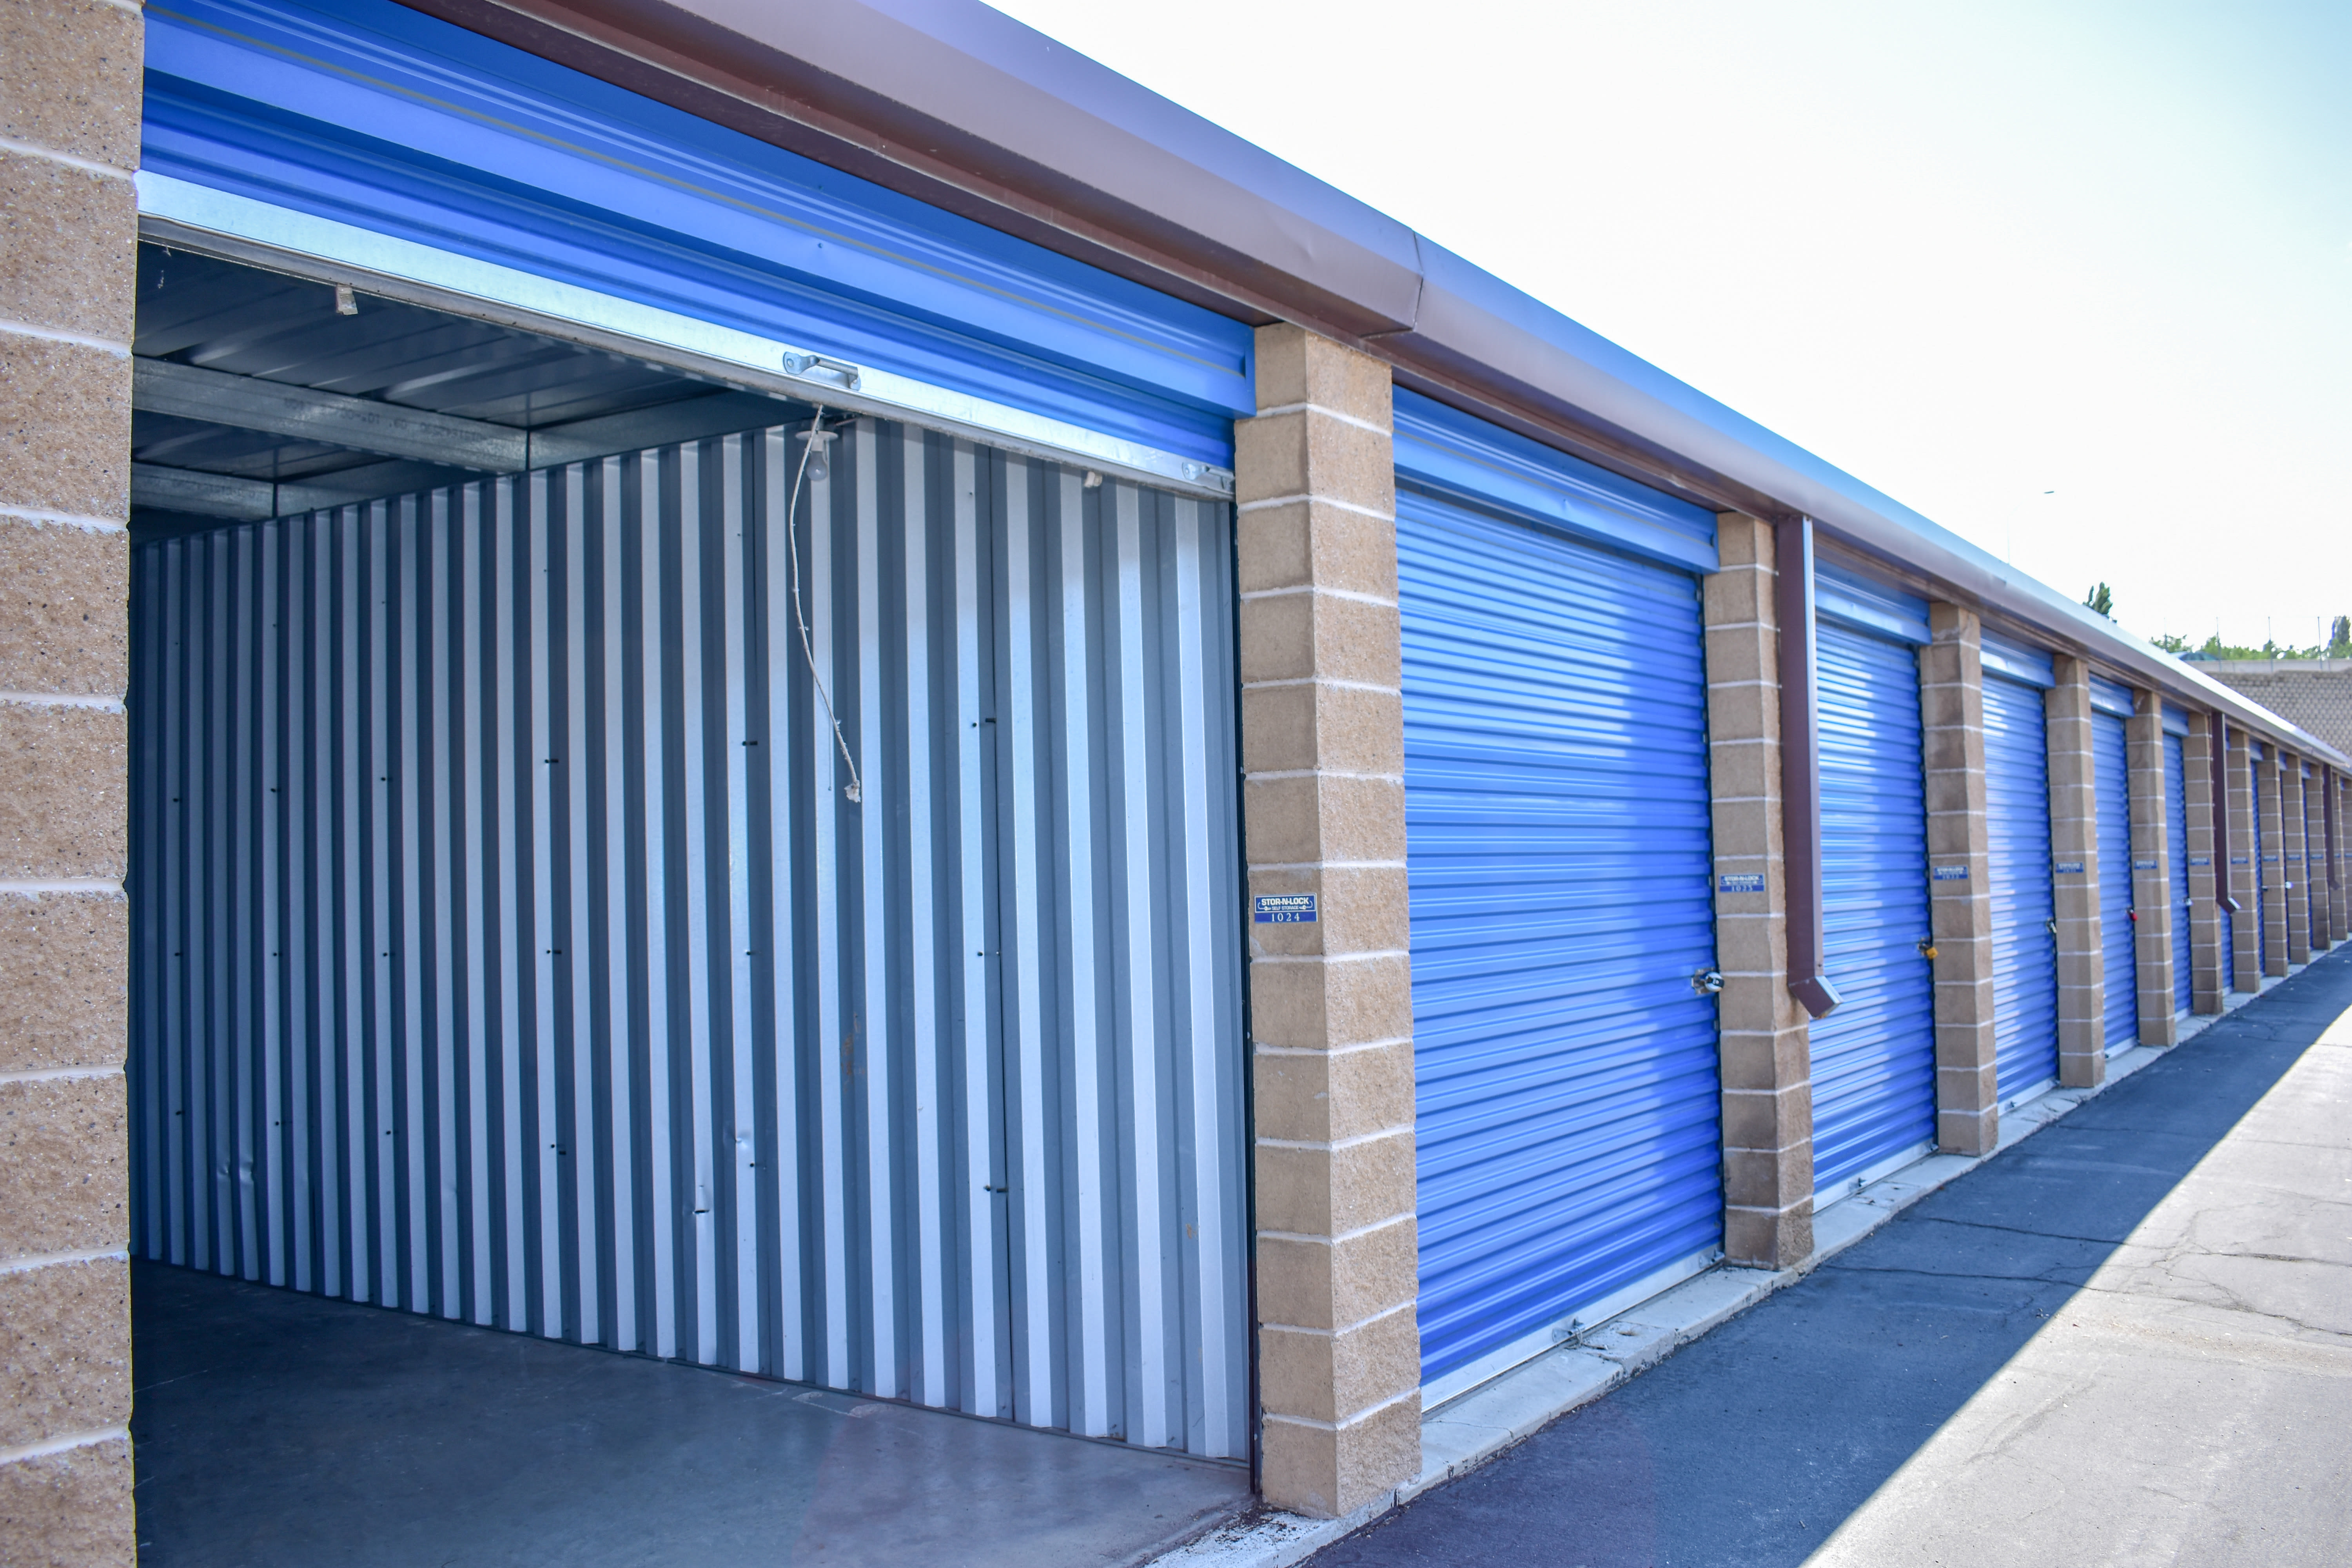 Enclosed auto storage at STOR-N-LOCK Self Storage in Riverdale, Utah